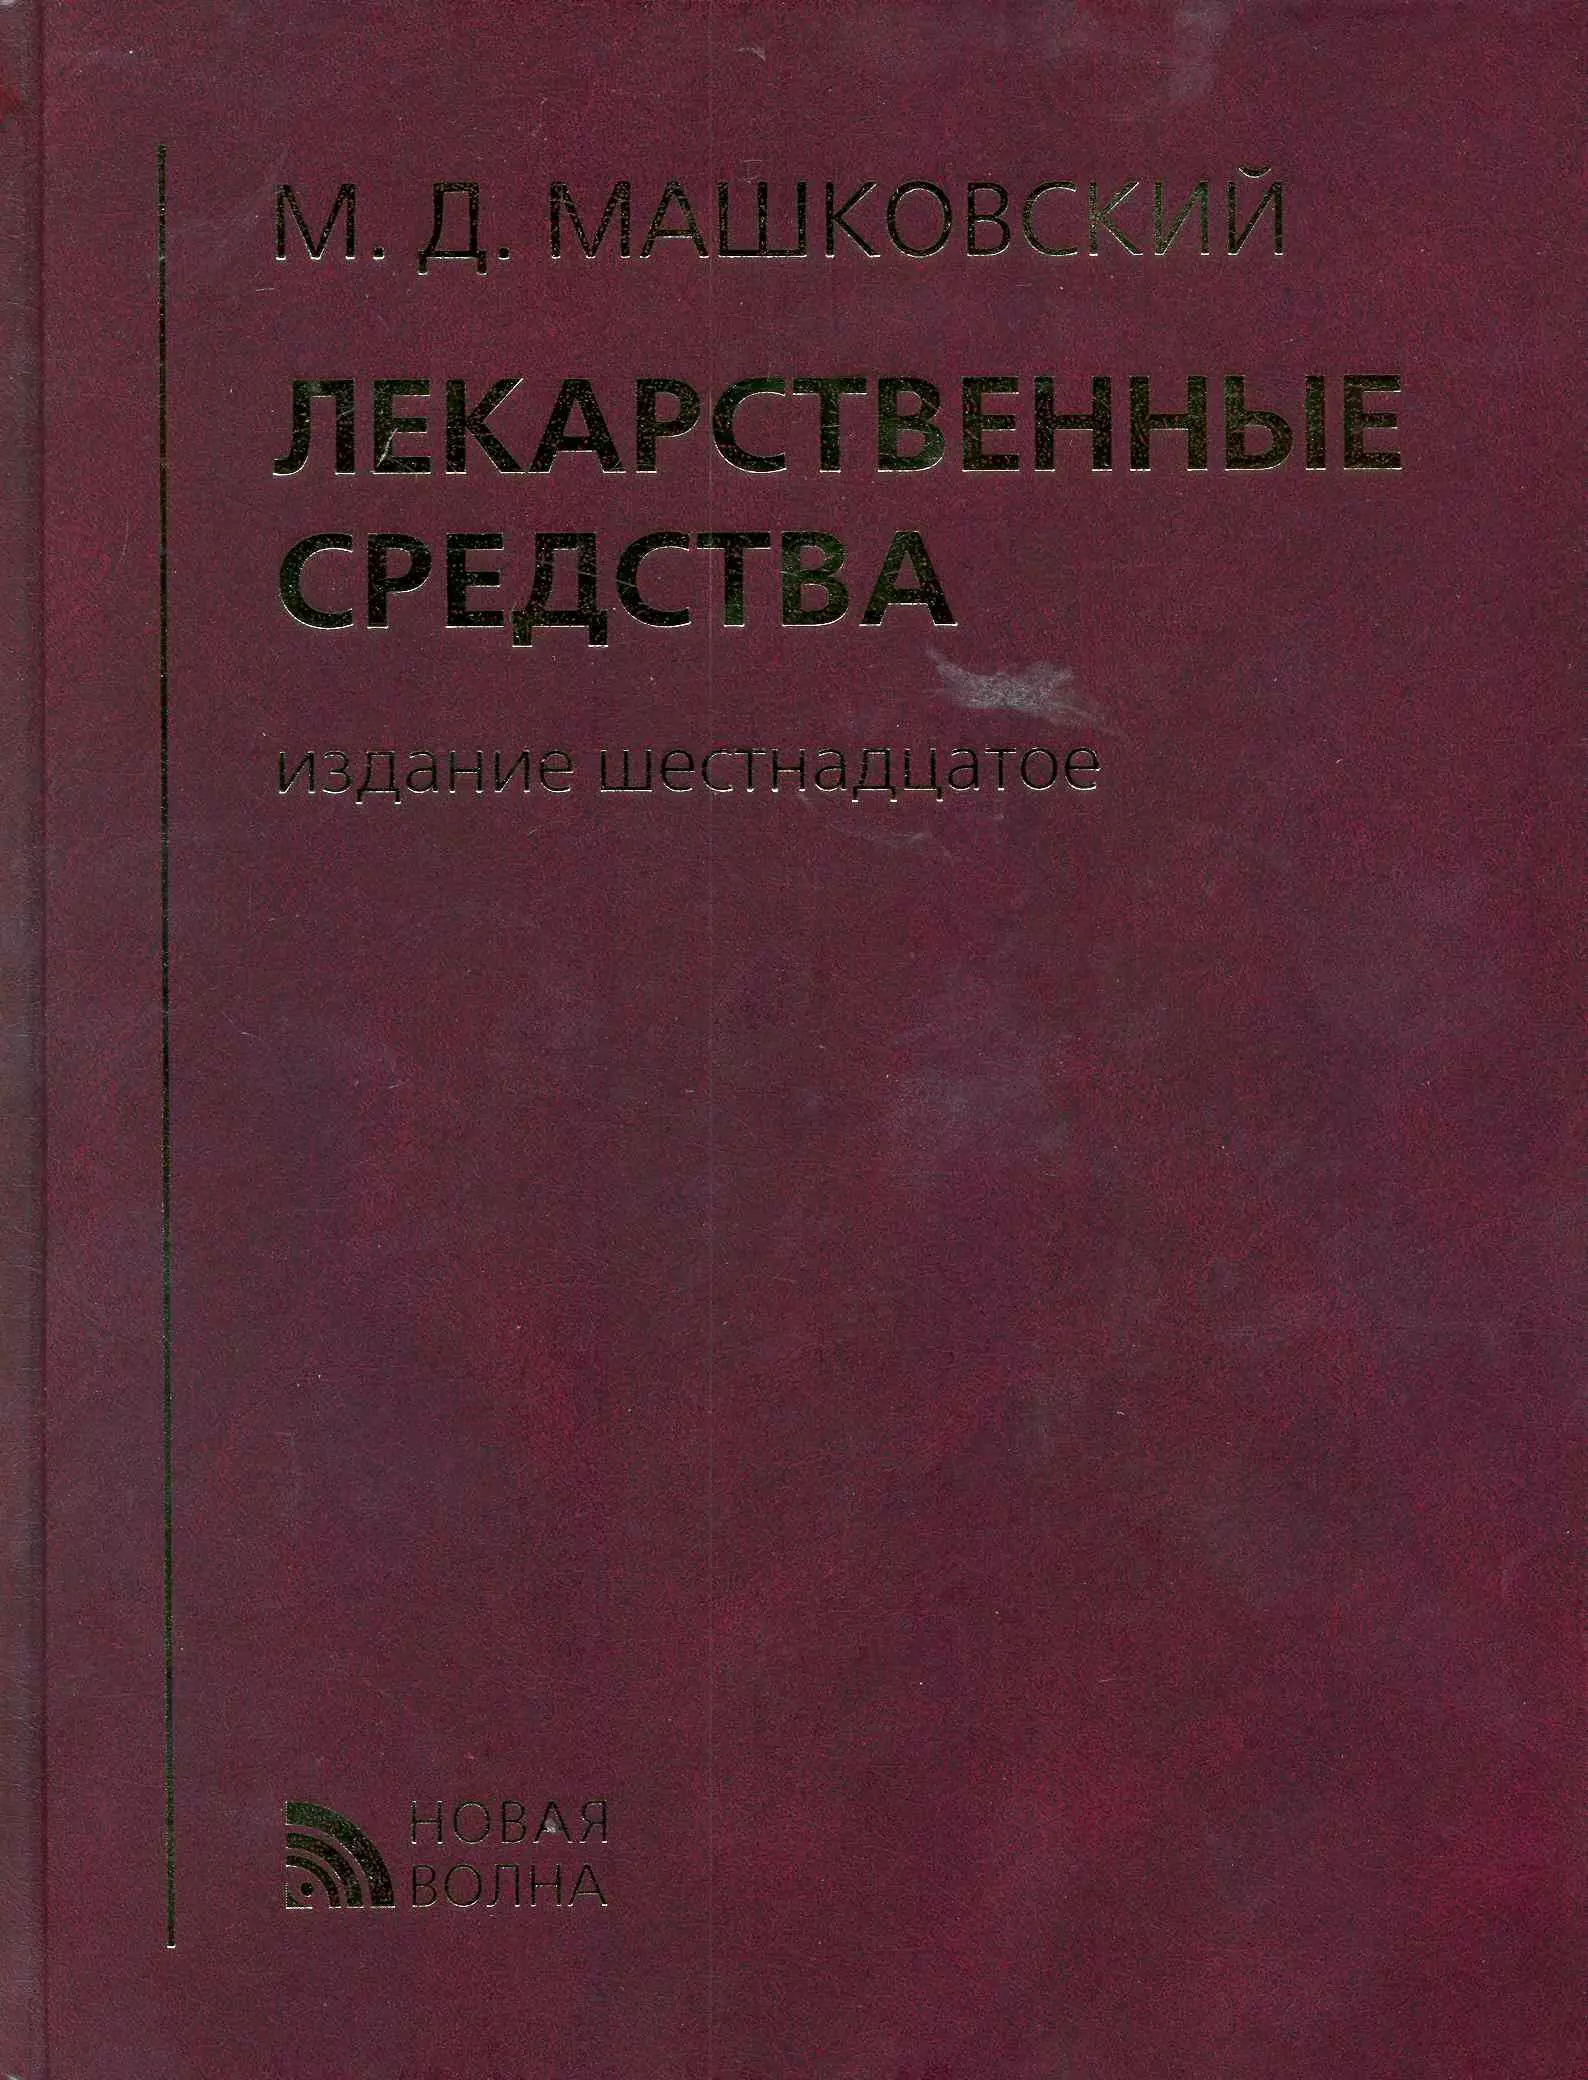 Машковский Михаил Давыдович - Лекарственные средства (16 изд) Машковский (кор.)